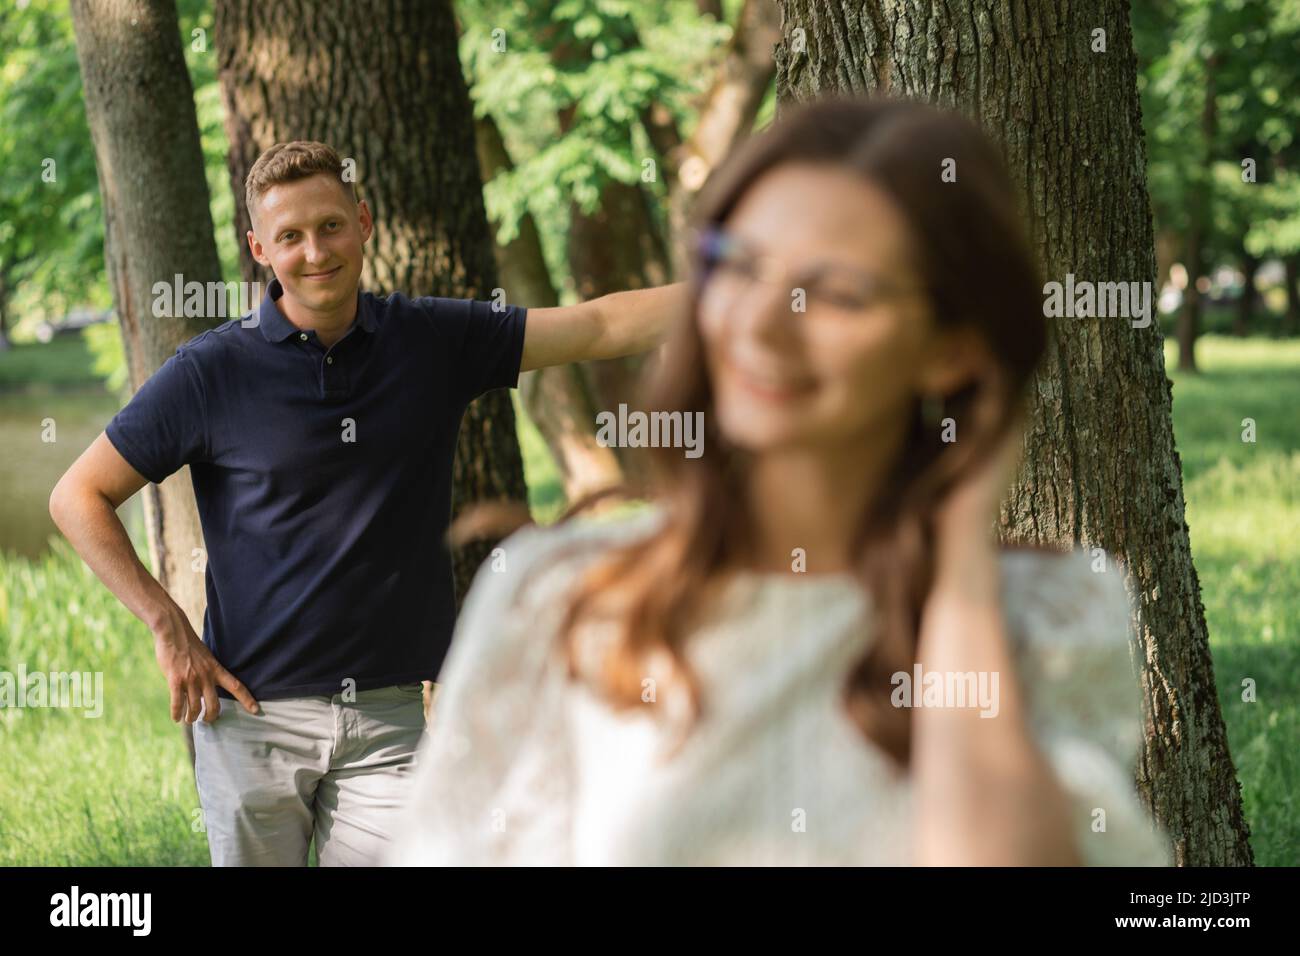 Defokussieren Frau auf Mann im Park zwischen Bäumen, glückliche Menschen Spaß am Sommertag, Paar verliebt Stockfoto